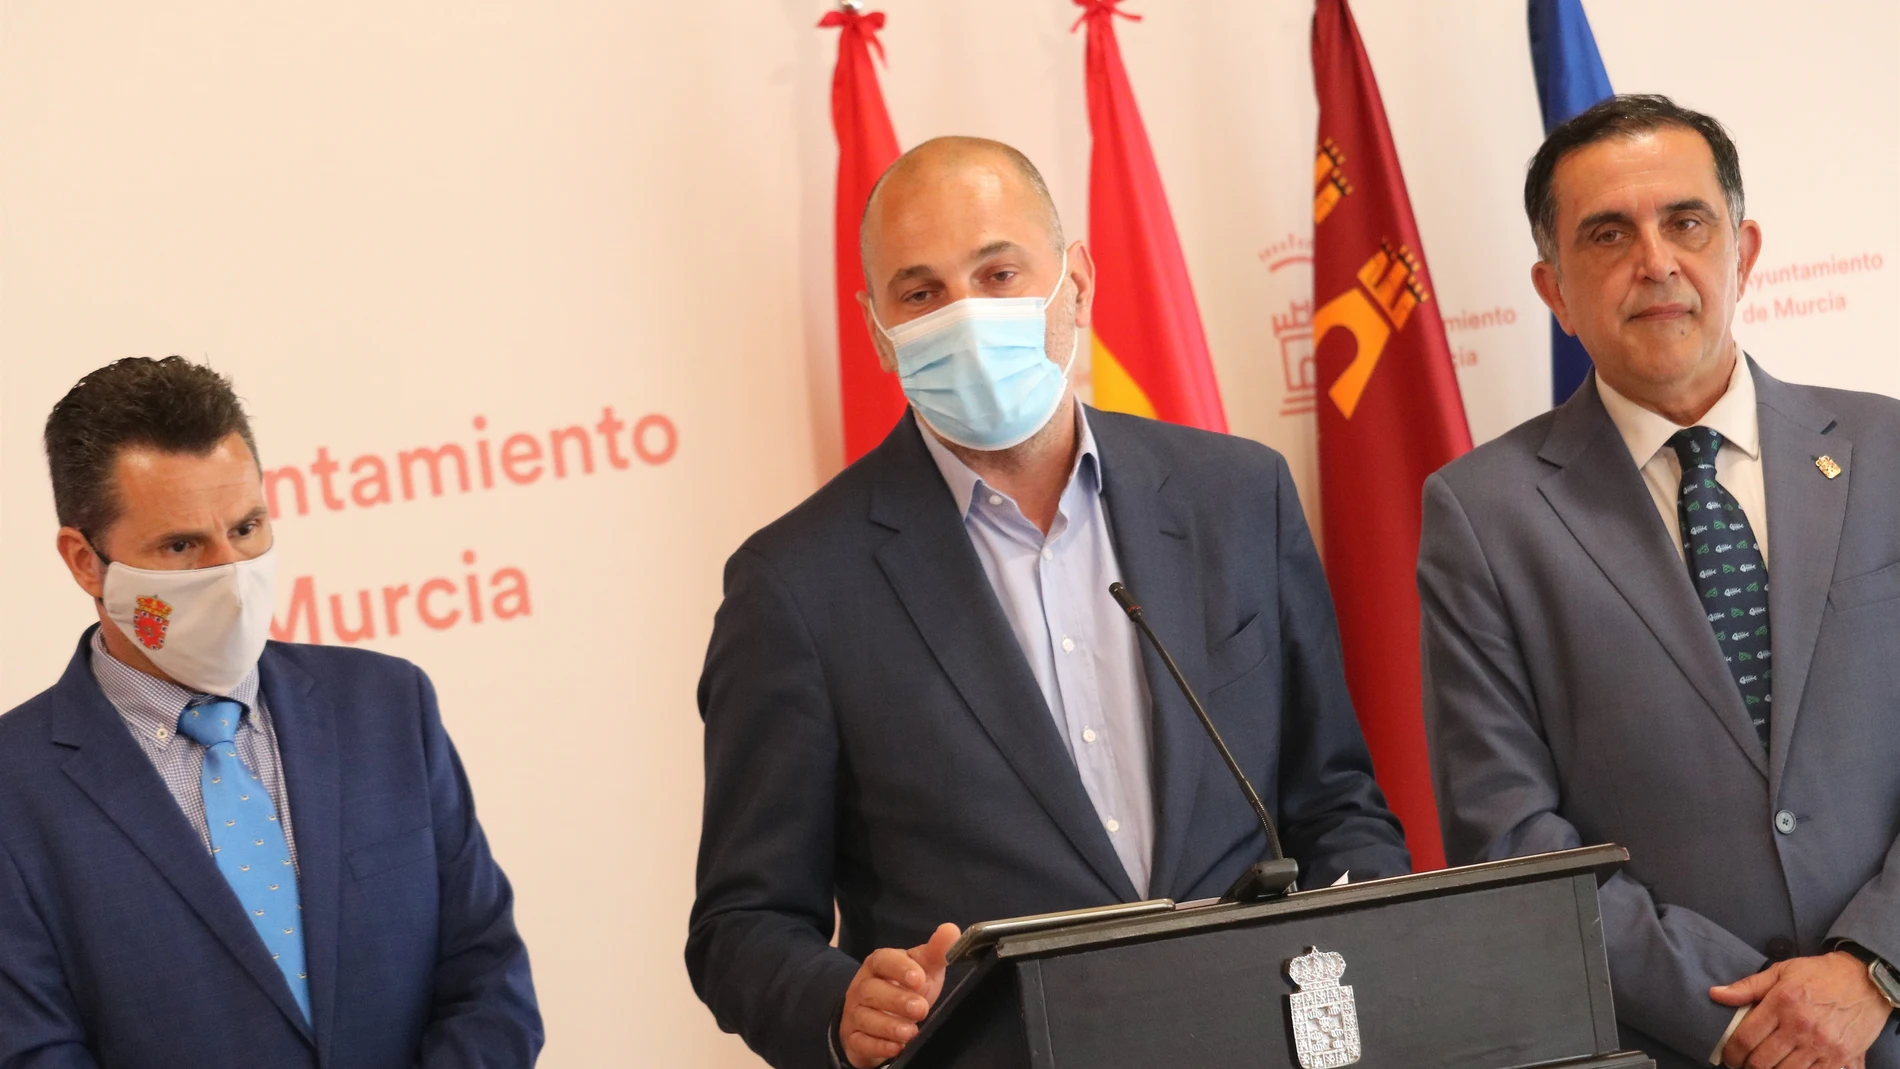 El vicealcalde de Murcia, Mario Gómez, el concejal de Festejos, Pedro García Rex y el alcalde de Murcia, José Antonio Serrano